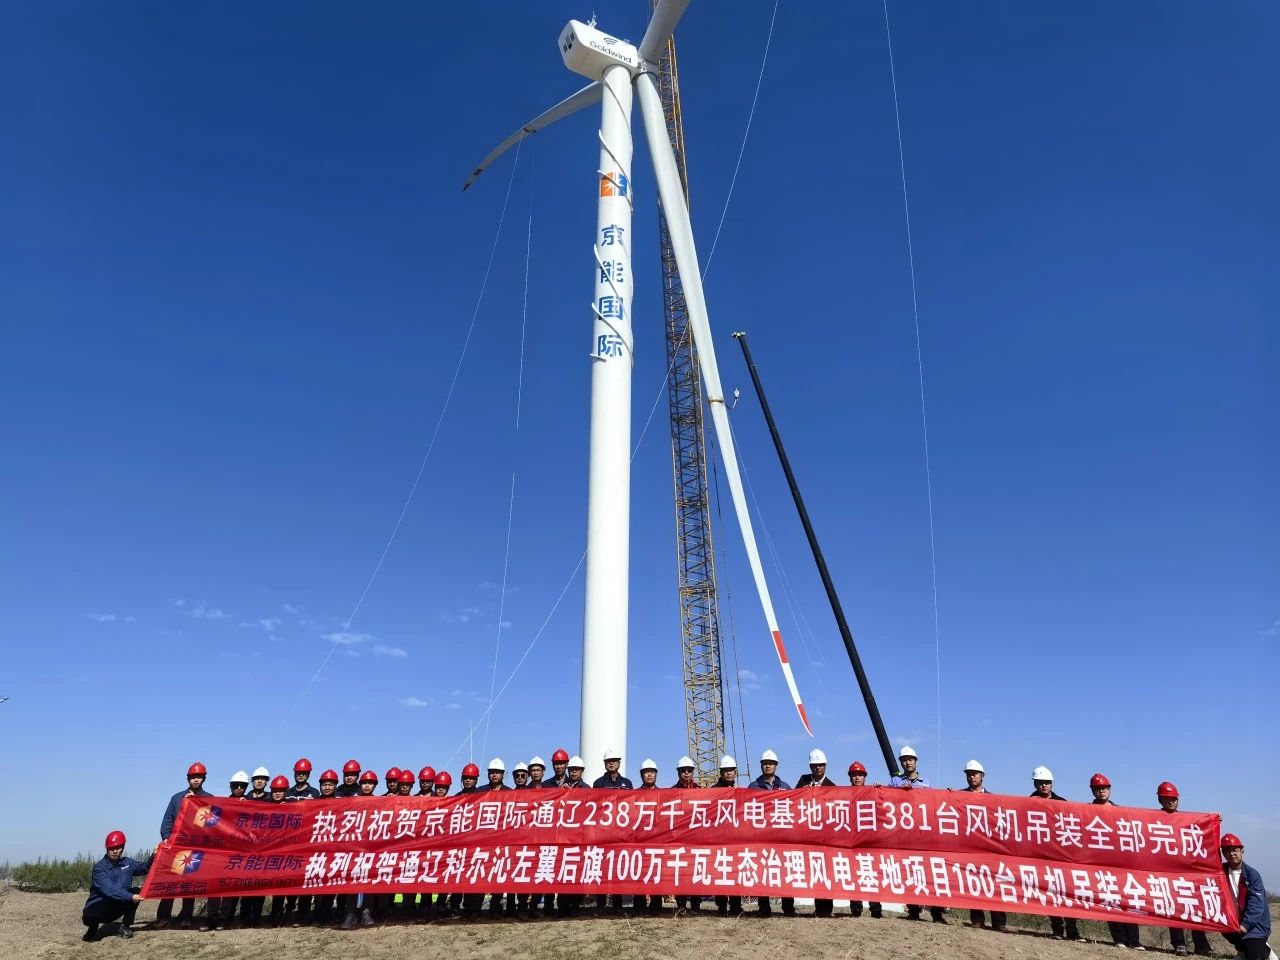 京能国际内蒙古通辽2.38GW风电基地项目381台风<em>力发电</em>机组吊装全部完成